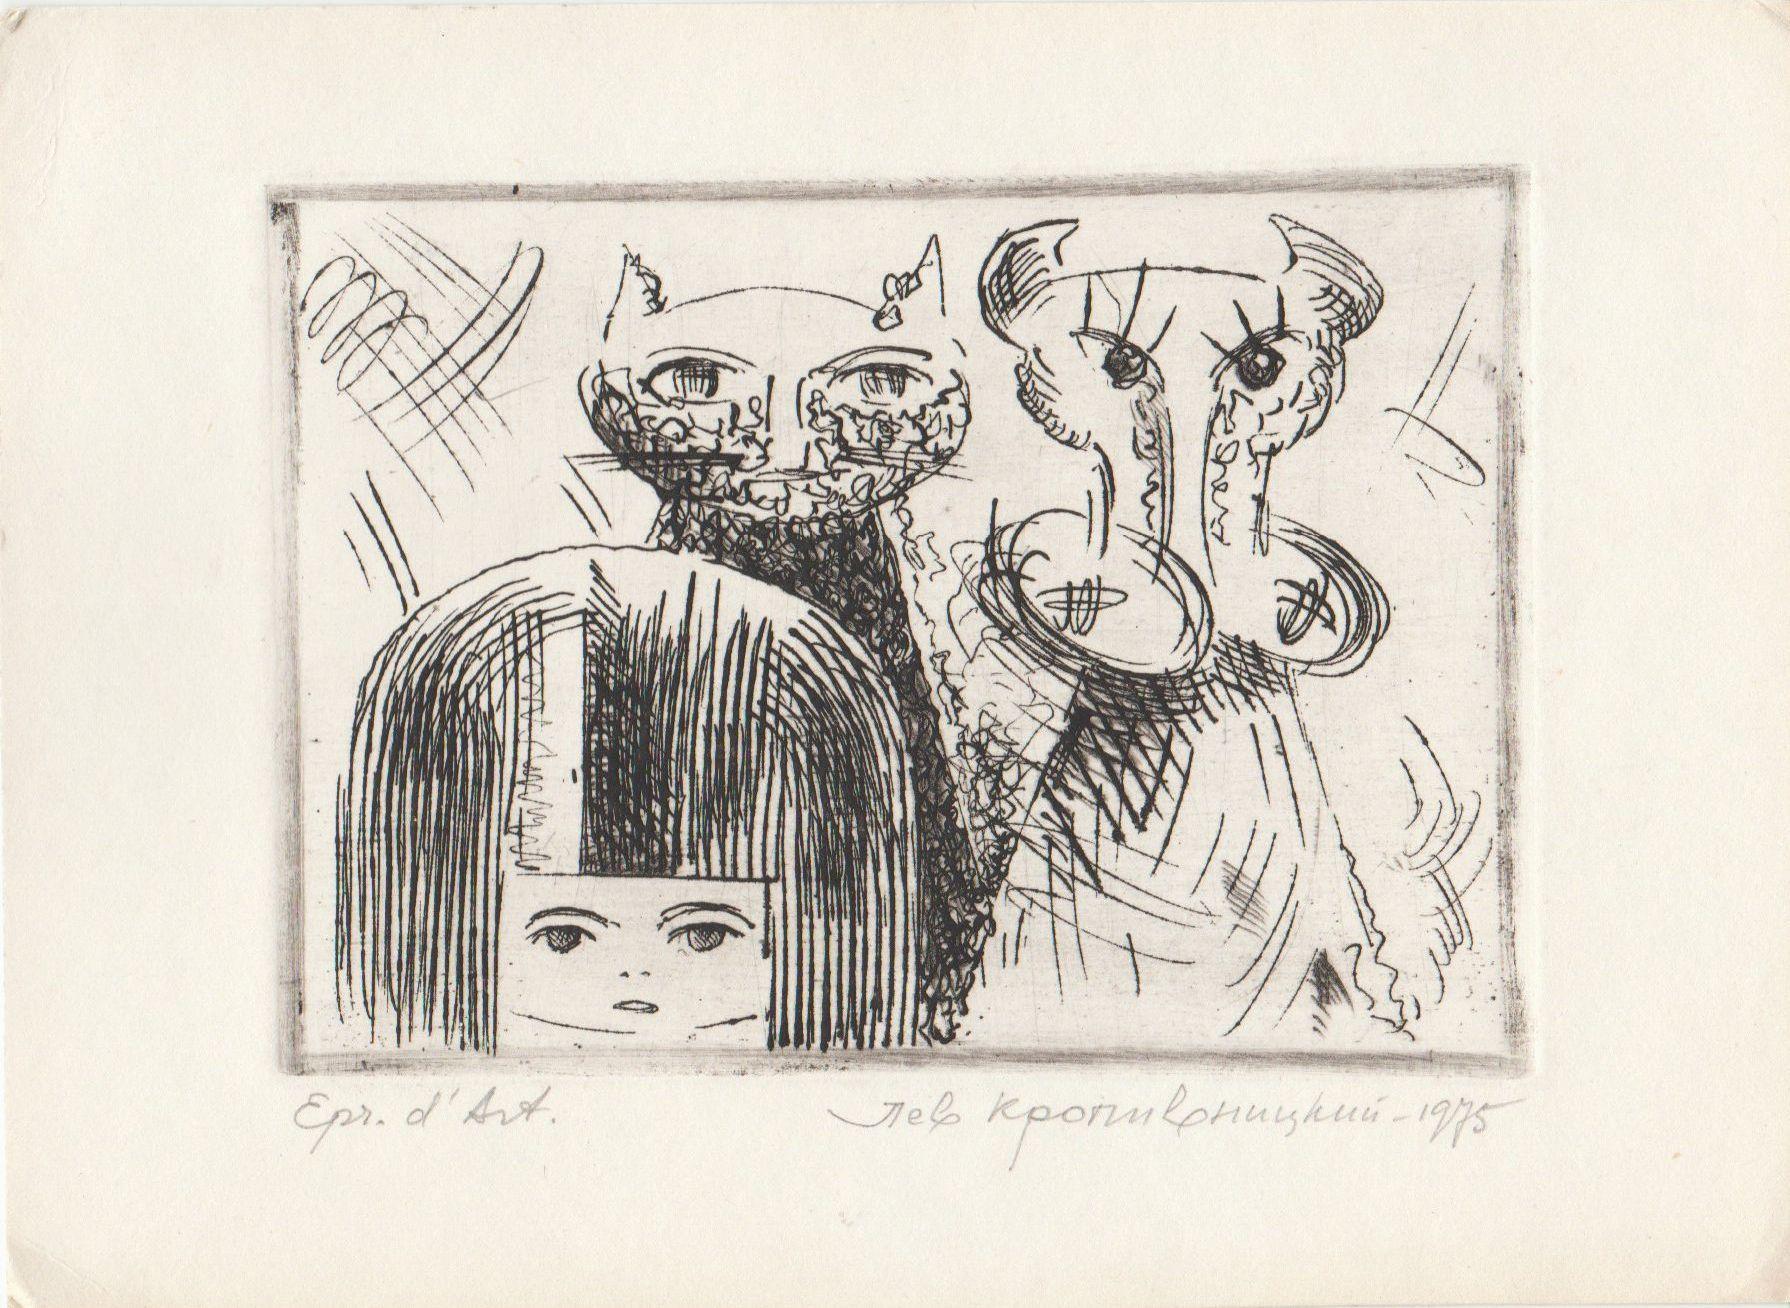 La fille, le chat et la vache. 1975, papier, gravure à l'eau-forte, 8,5x10,5 cm - Print de Lev Kropivnitsky